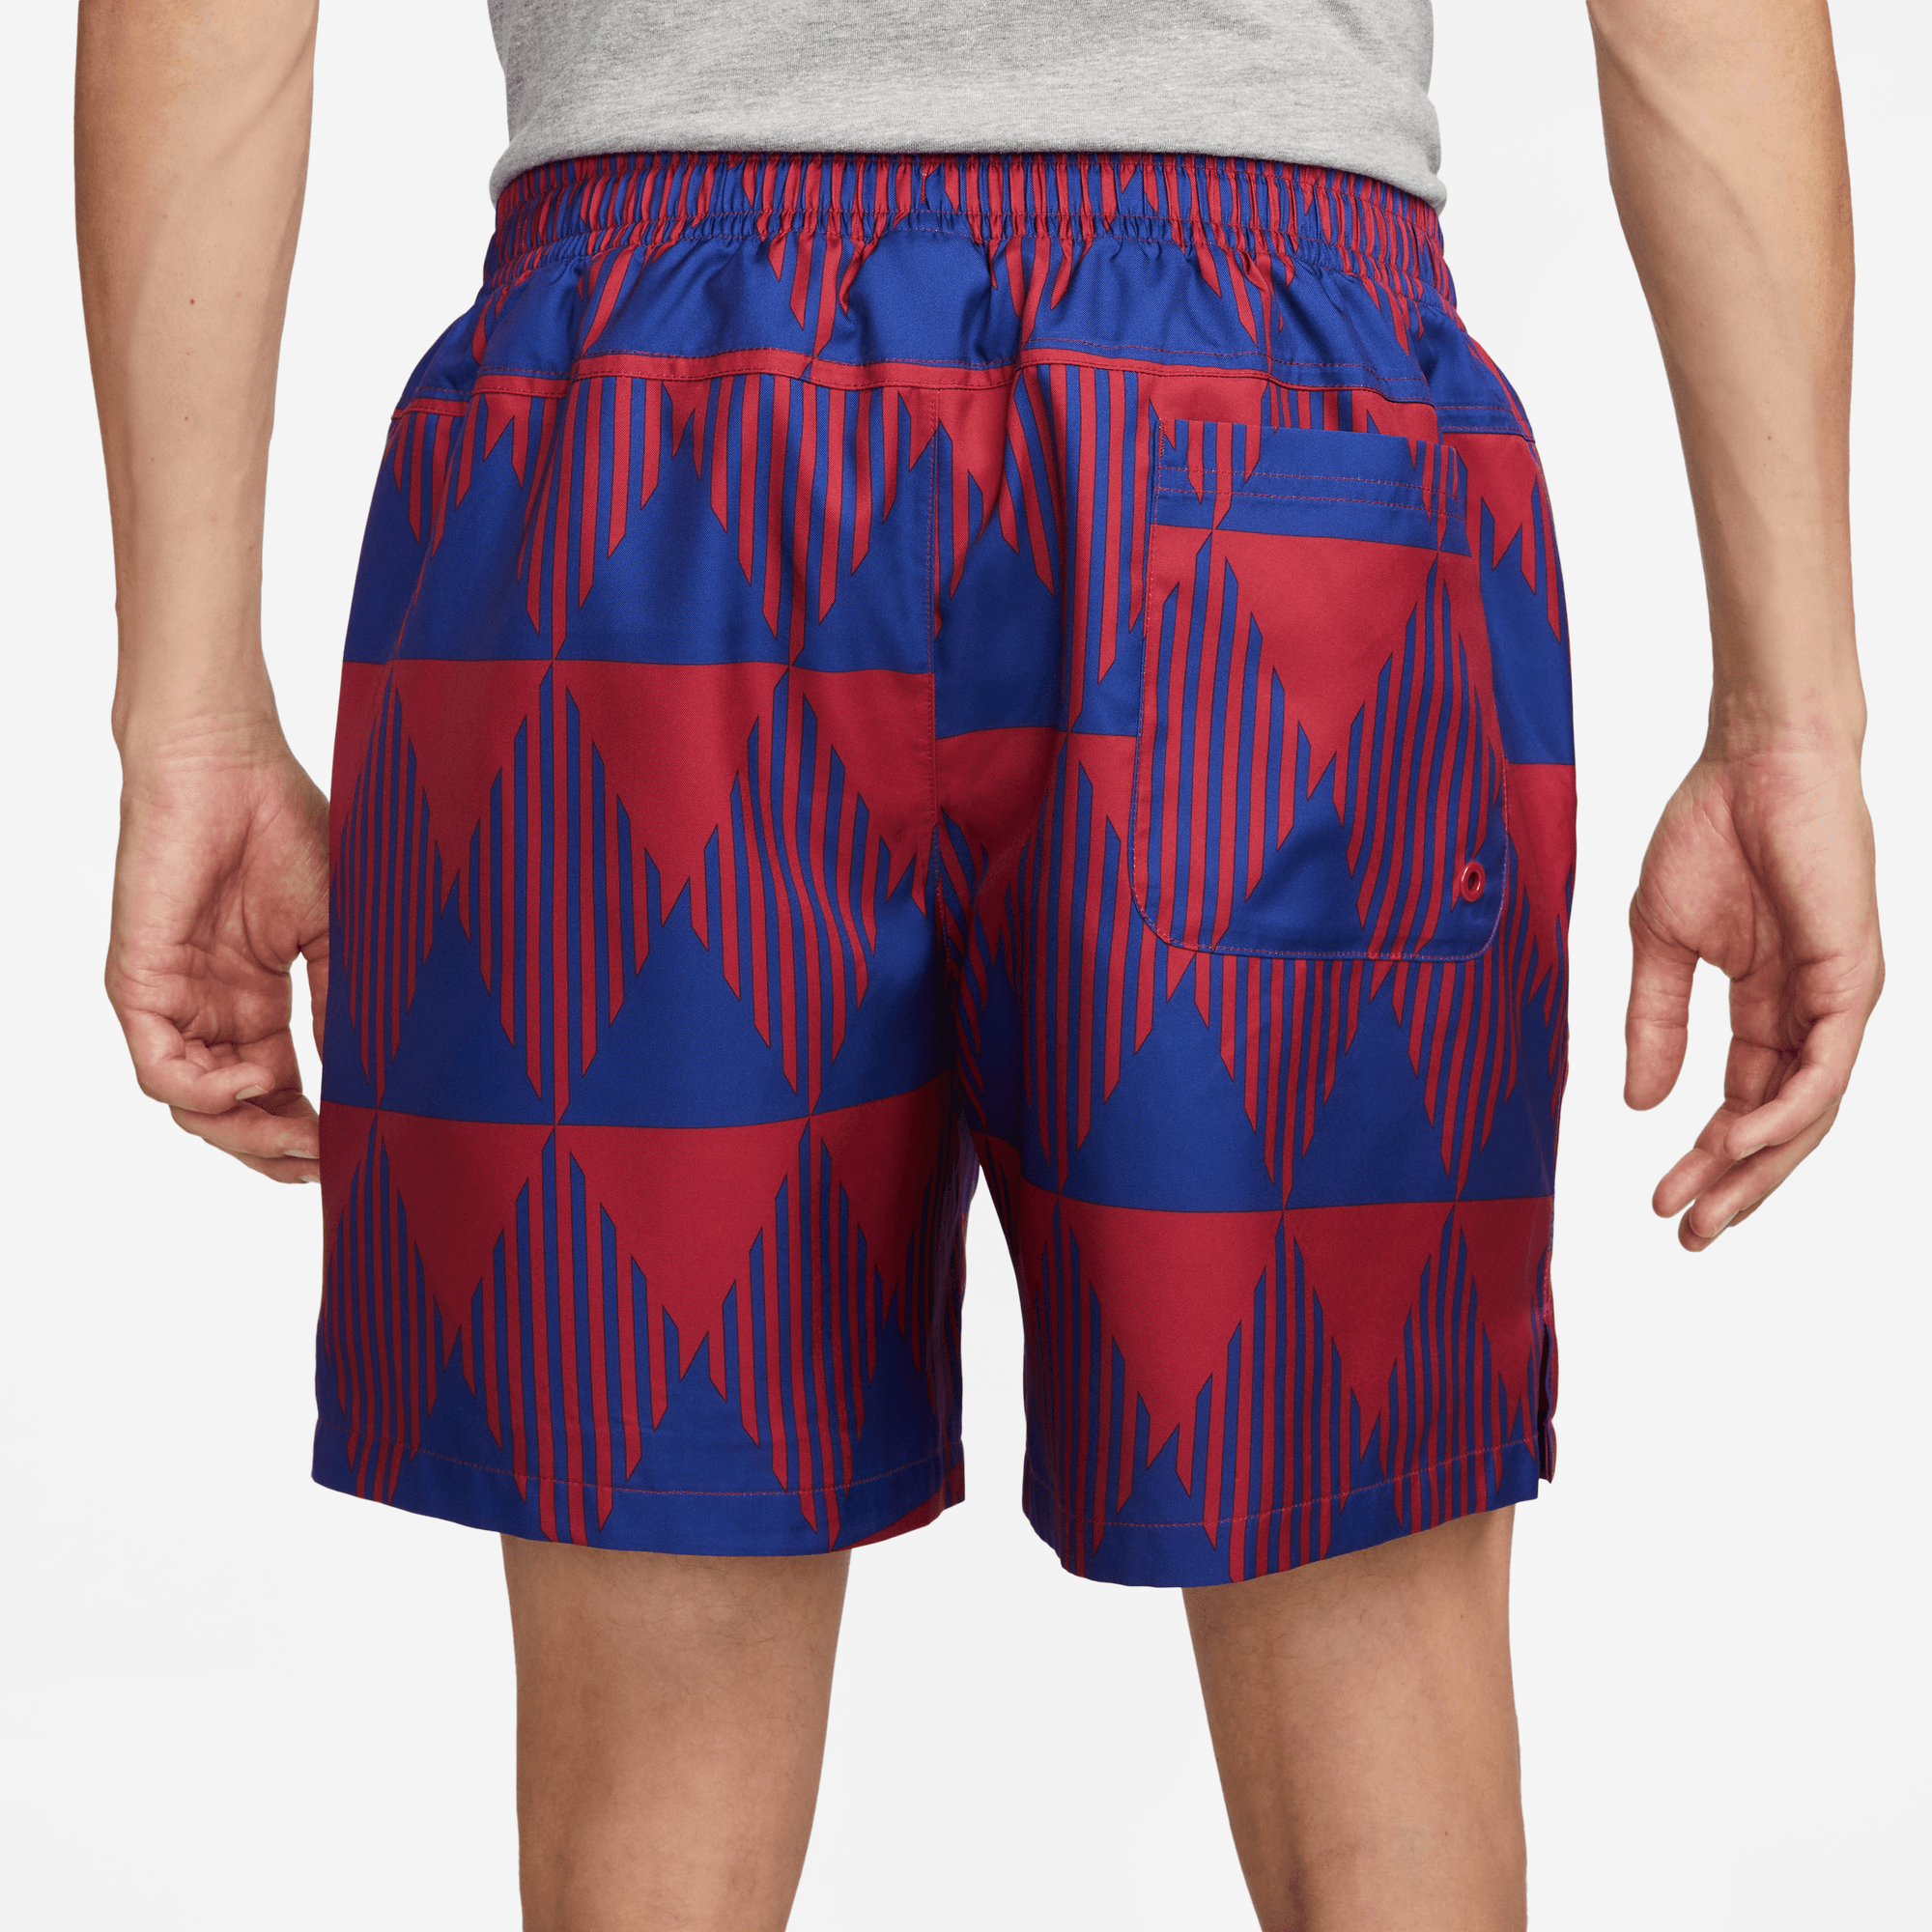 Barcelona Flow / Graphic - Blue Shorts Red stefanssoccer.com:Nike